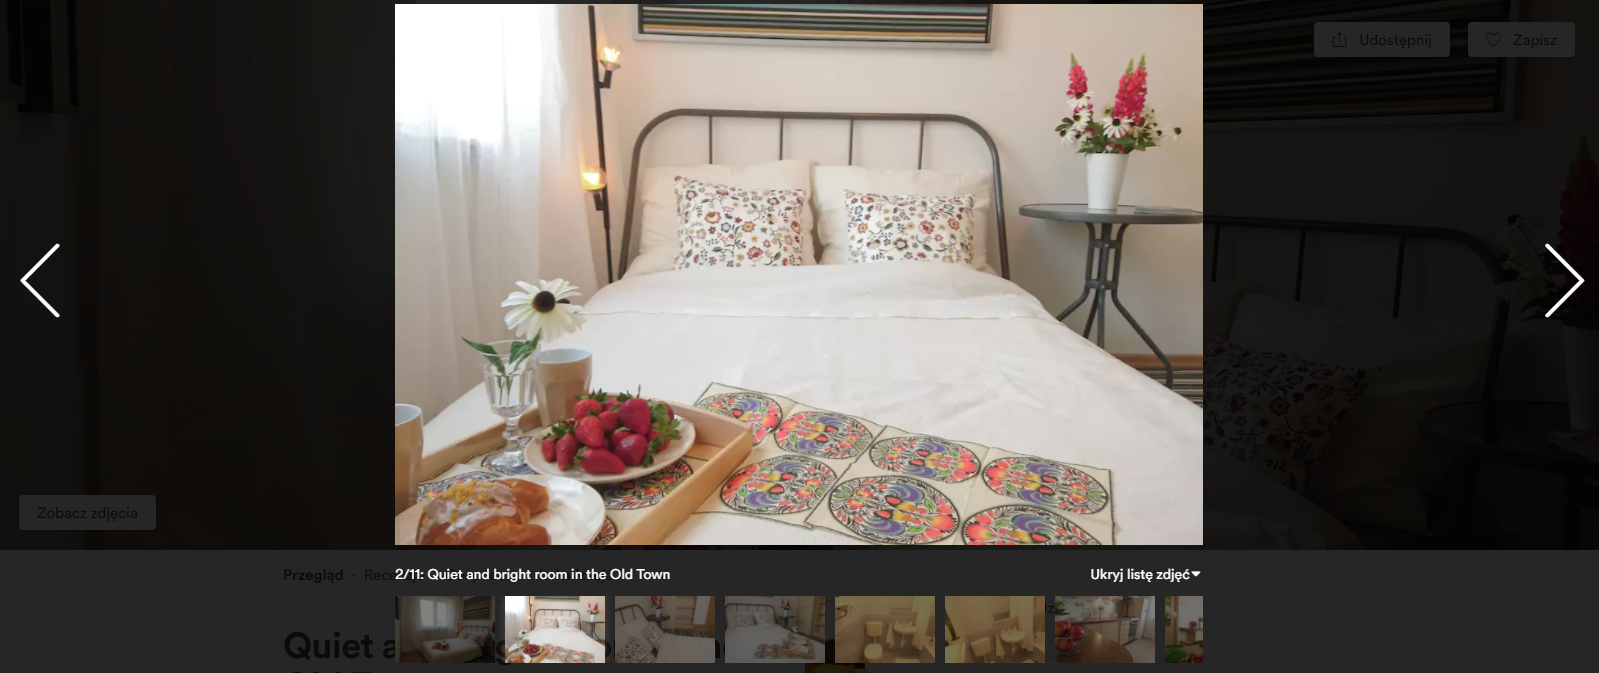 Airbnb - bele kaj, blog podróżniczy po śląsku